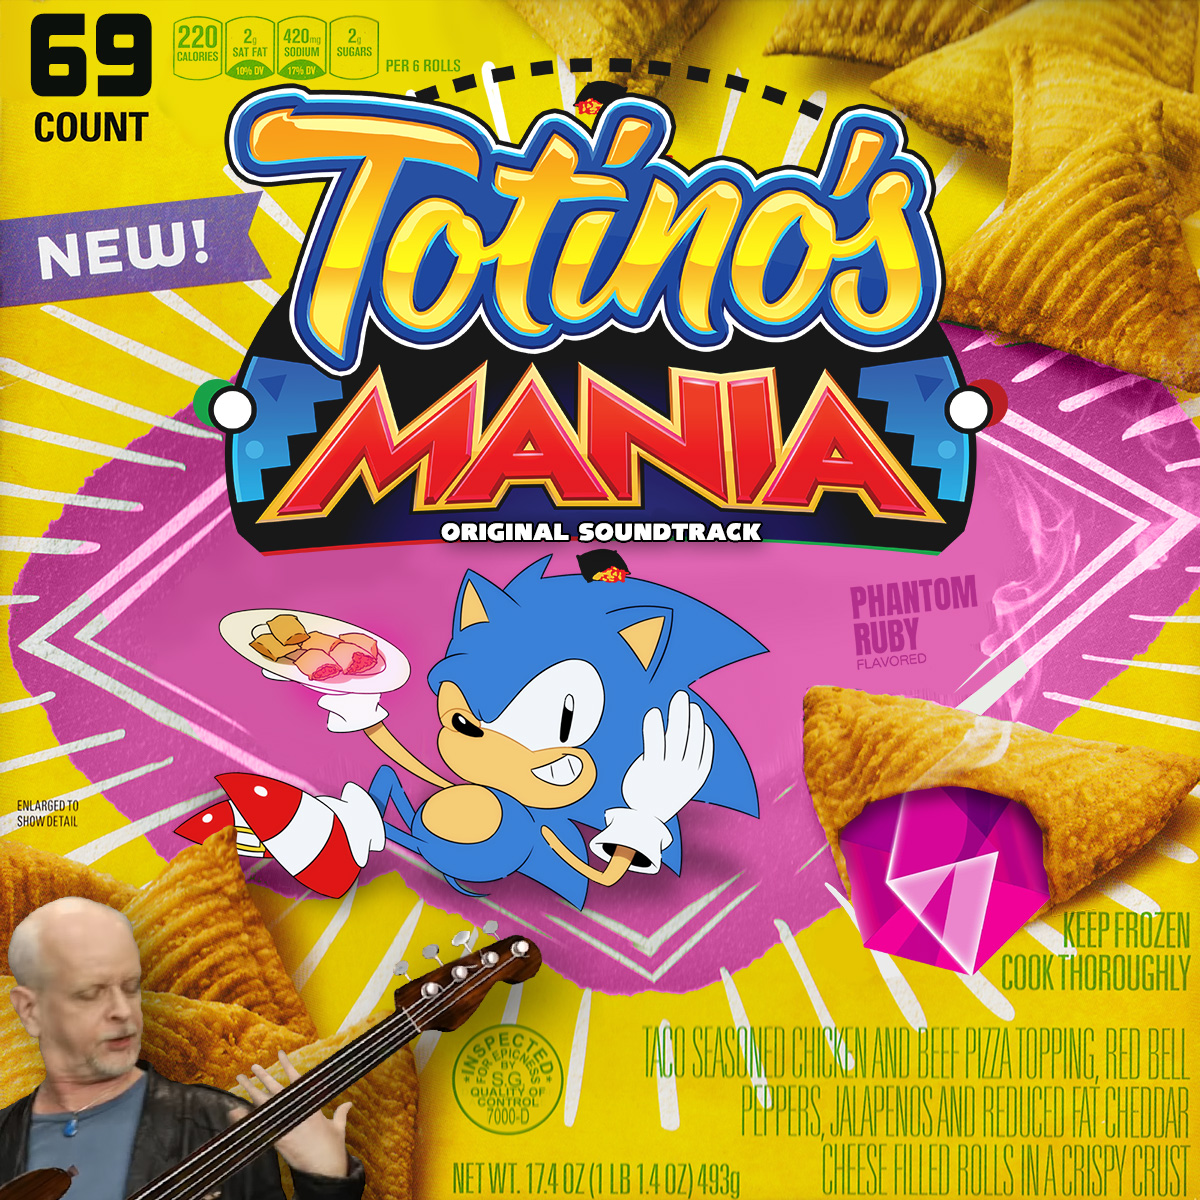 Totino's Mania Original Soundtrack